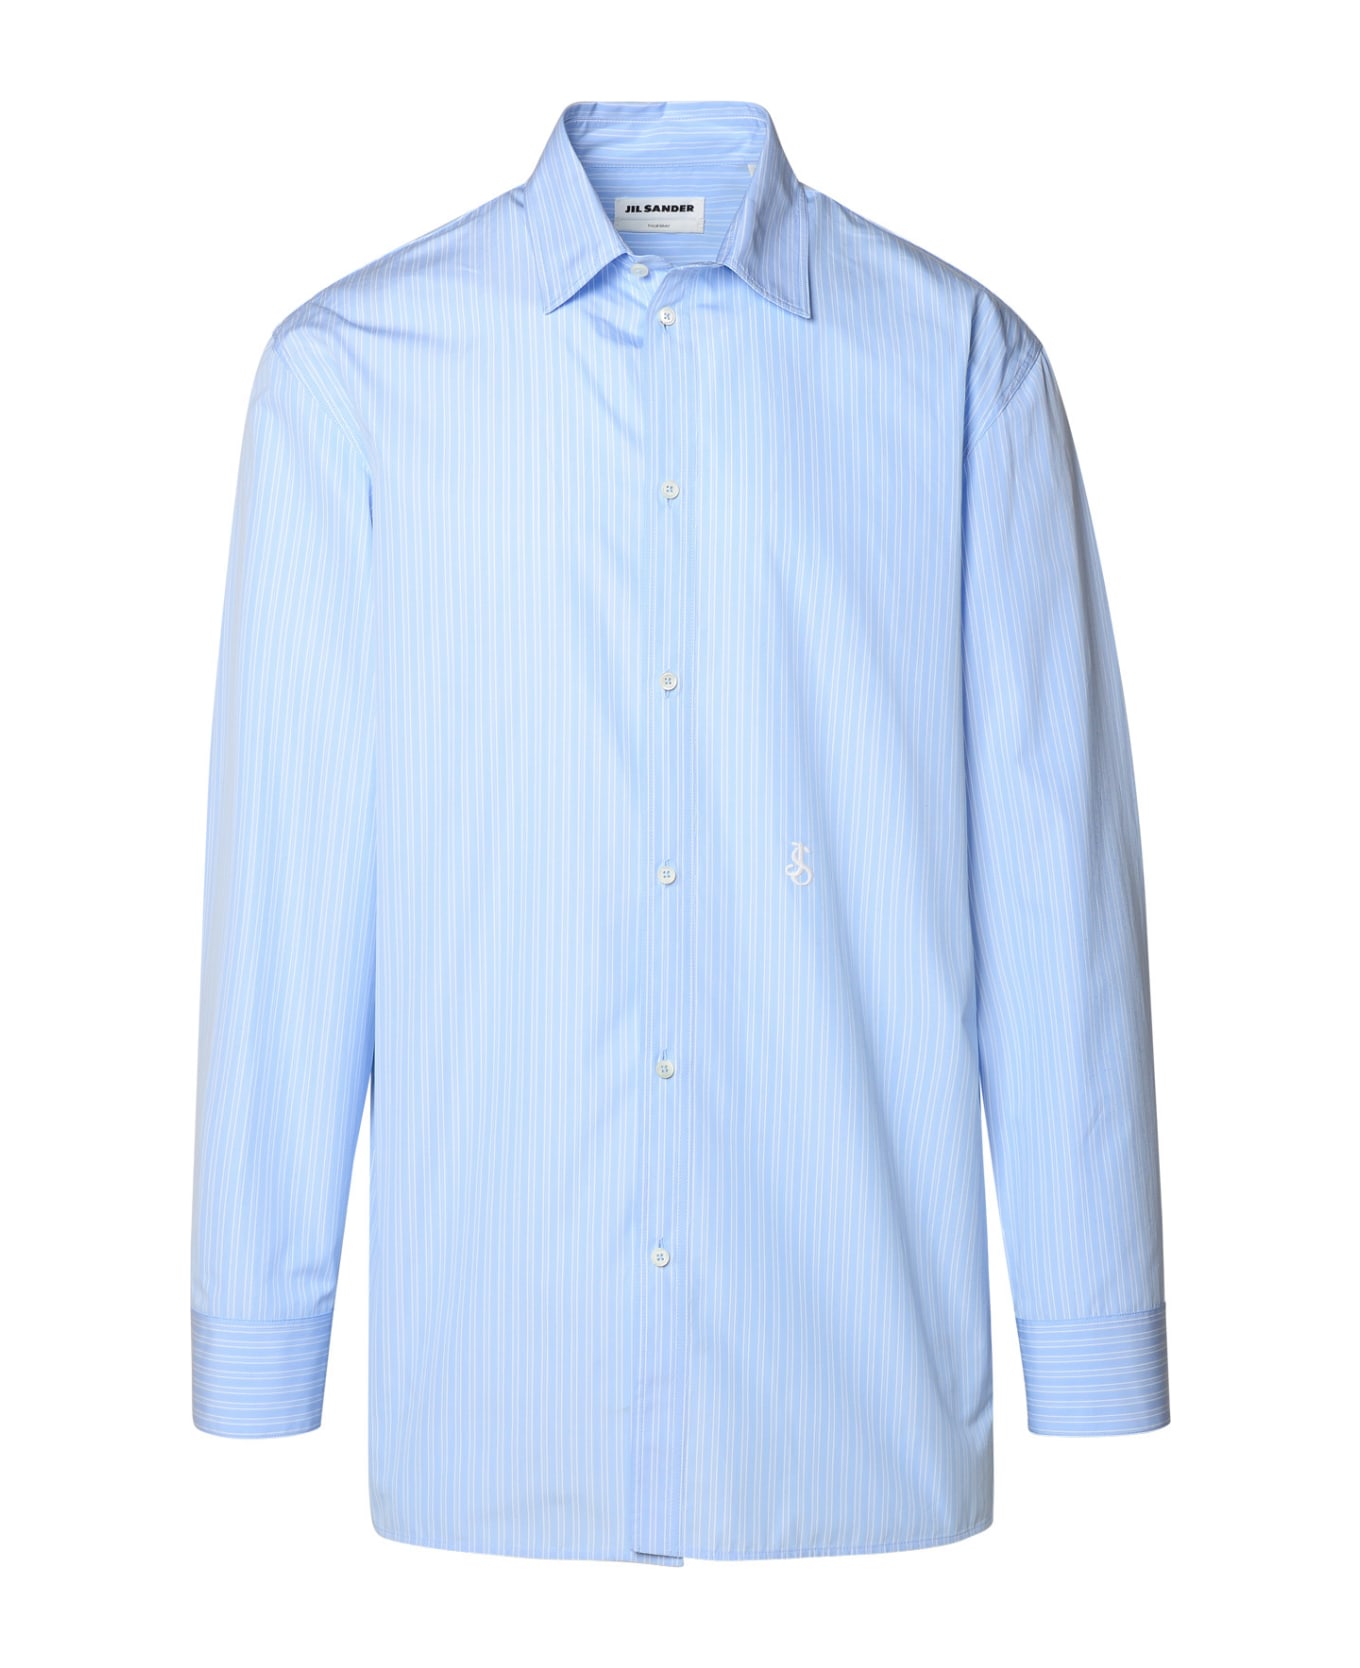 Jil Sander Light Blue Cotton Shirt - Light Blue シャツ